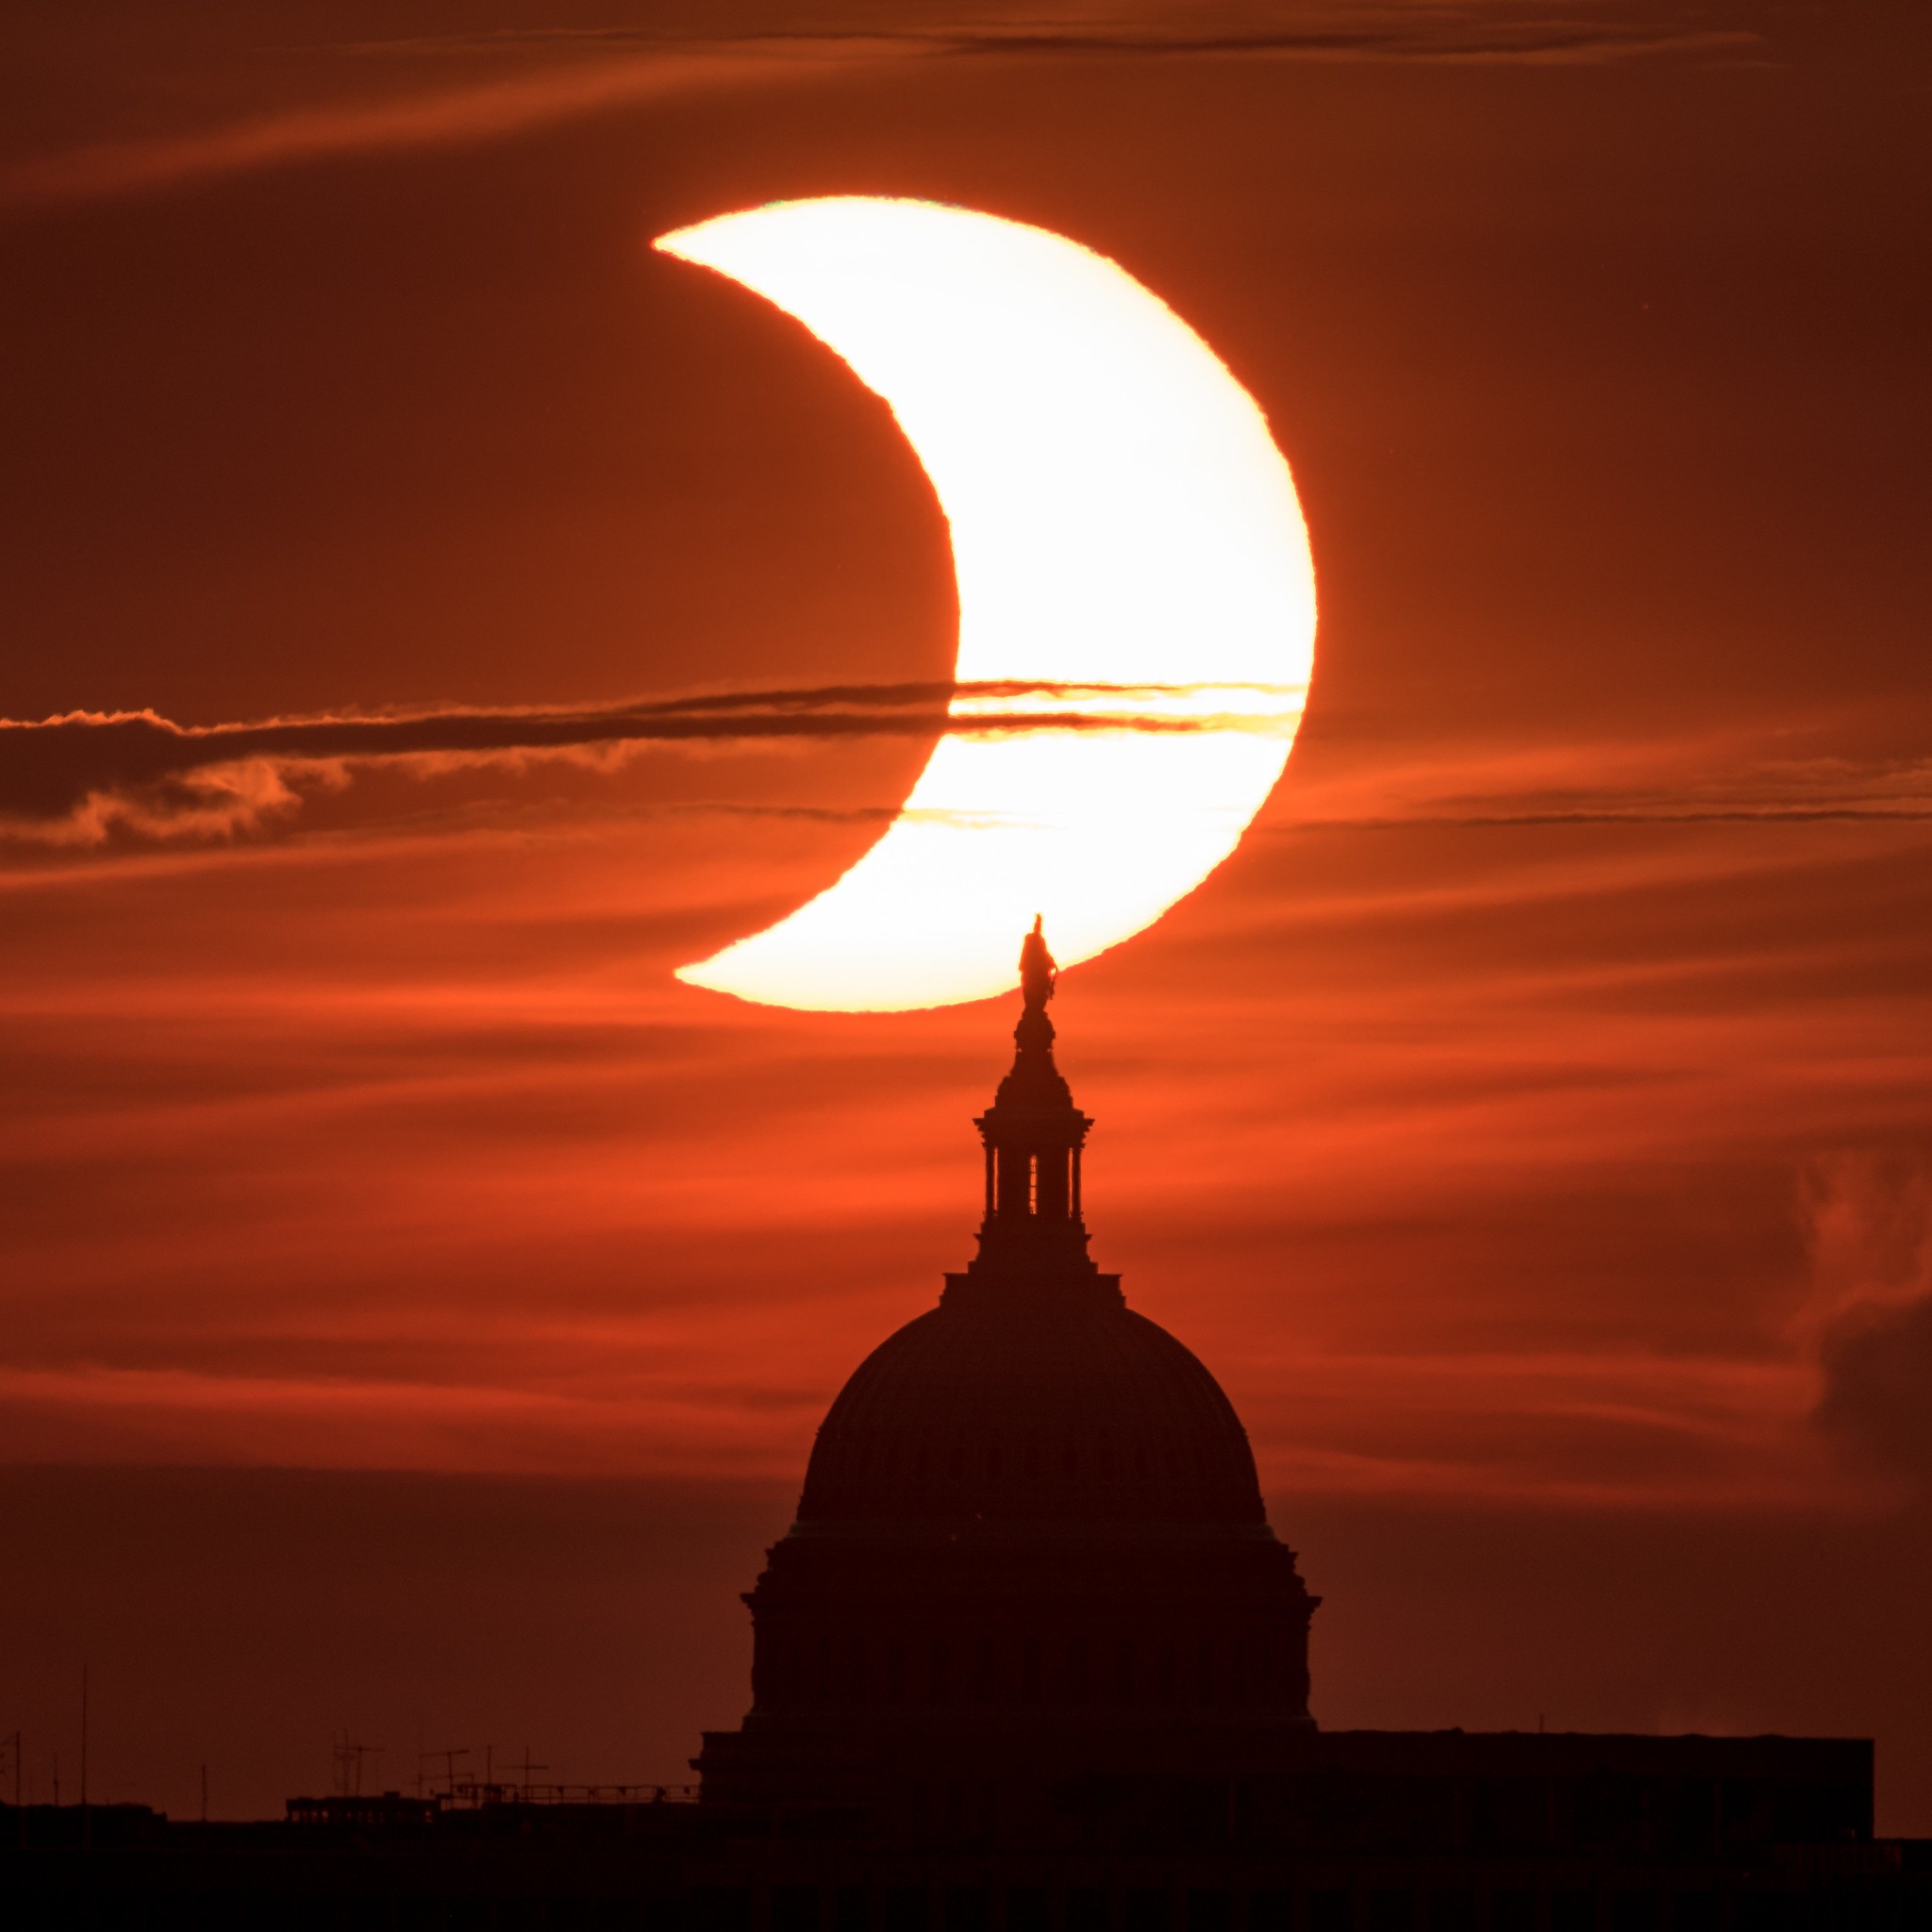 Nasa divulga imagens do eclipse solar anular visto parcialmente nos EUA. Acima: Fenômeno é visto acima do Capitólio dos Estados Unidos. Imagem captada na cidade de Arlington, Virgínia, e escolhida como Imagem do Dia pela Nasa (Foto: NASA/Bill Ingalls)